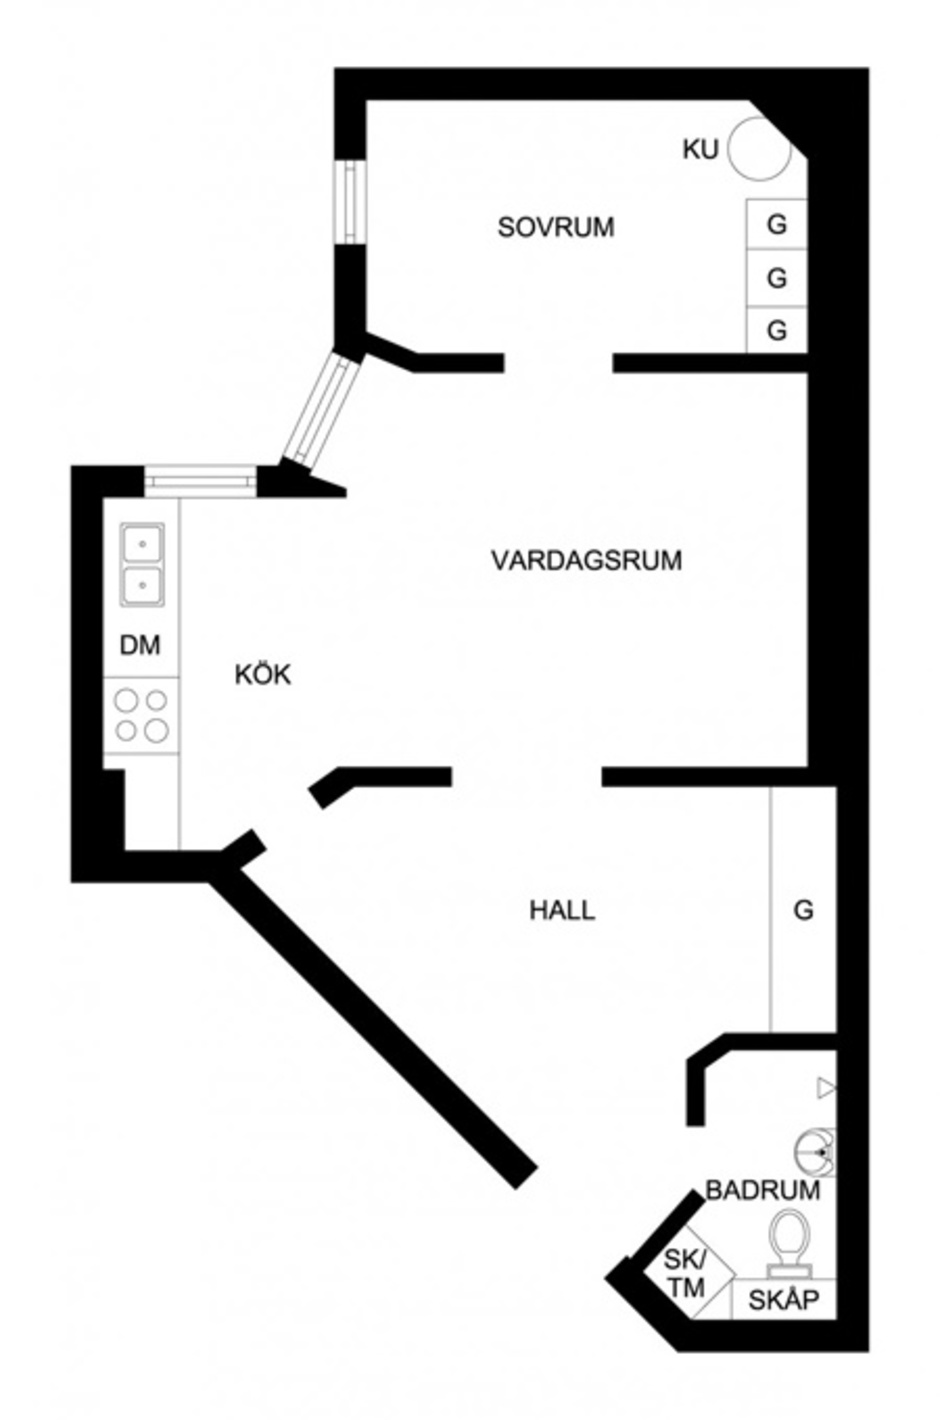 Квартира в Швеции в 62 кв. метра, скандинавский стиль